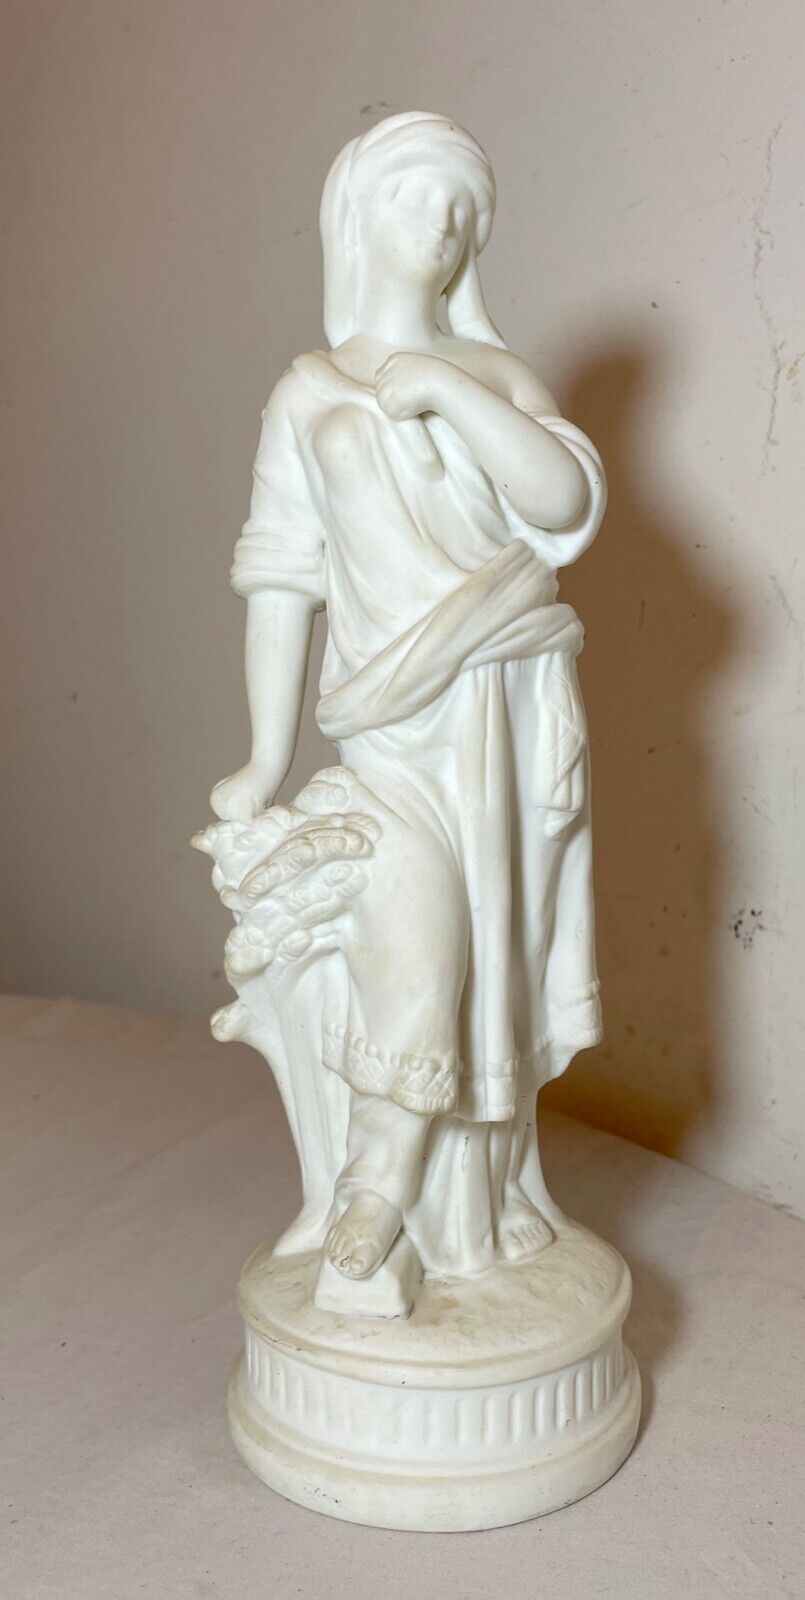 Antique 19th century parian porcelain lady European figural statue figure woman